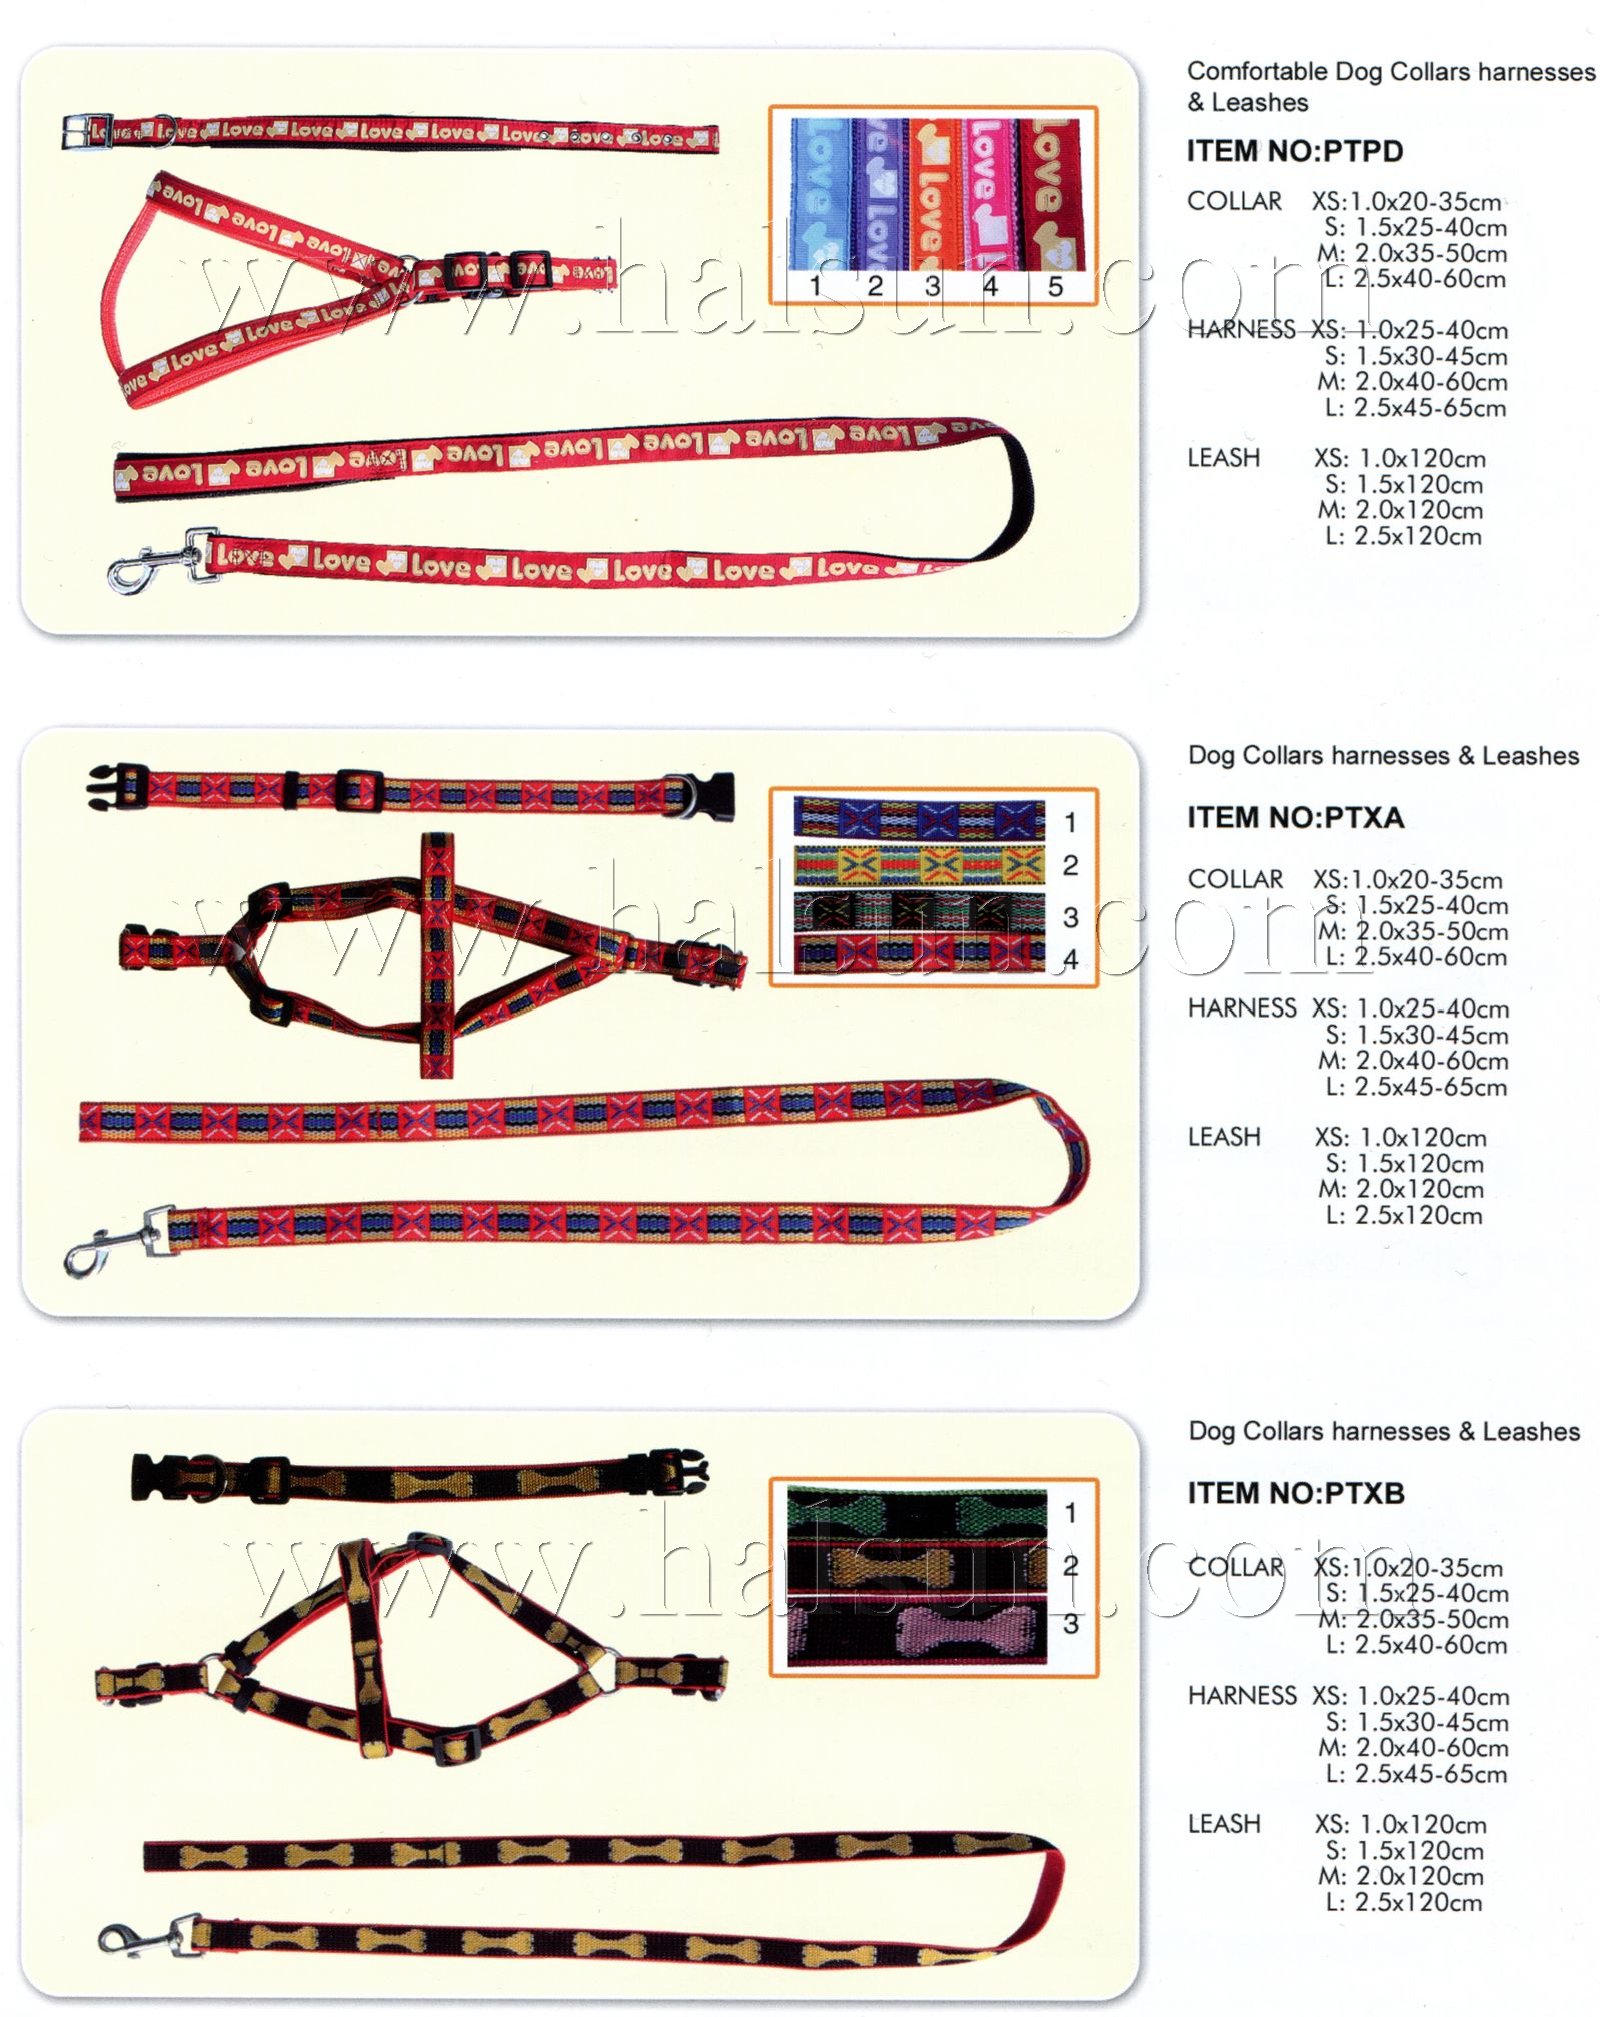 Dog Collars,dog Harnesses,dog Leashes,,PTXA